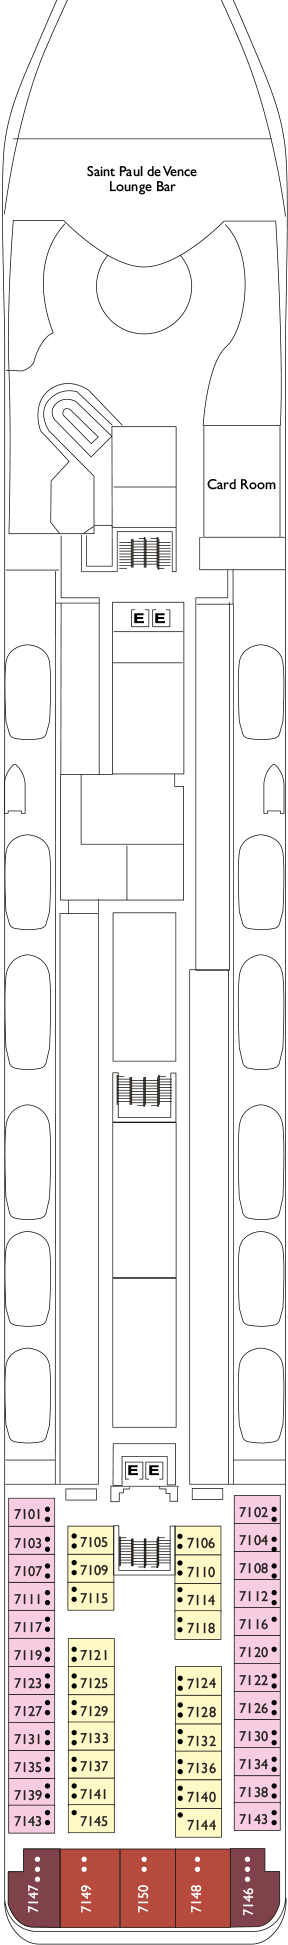 Costa neoRiviera Deck Plans